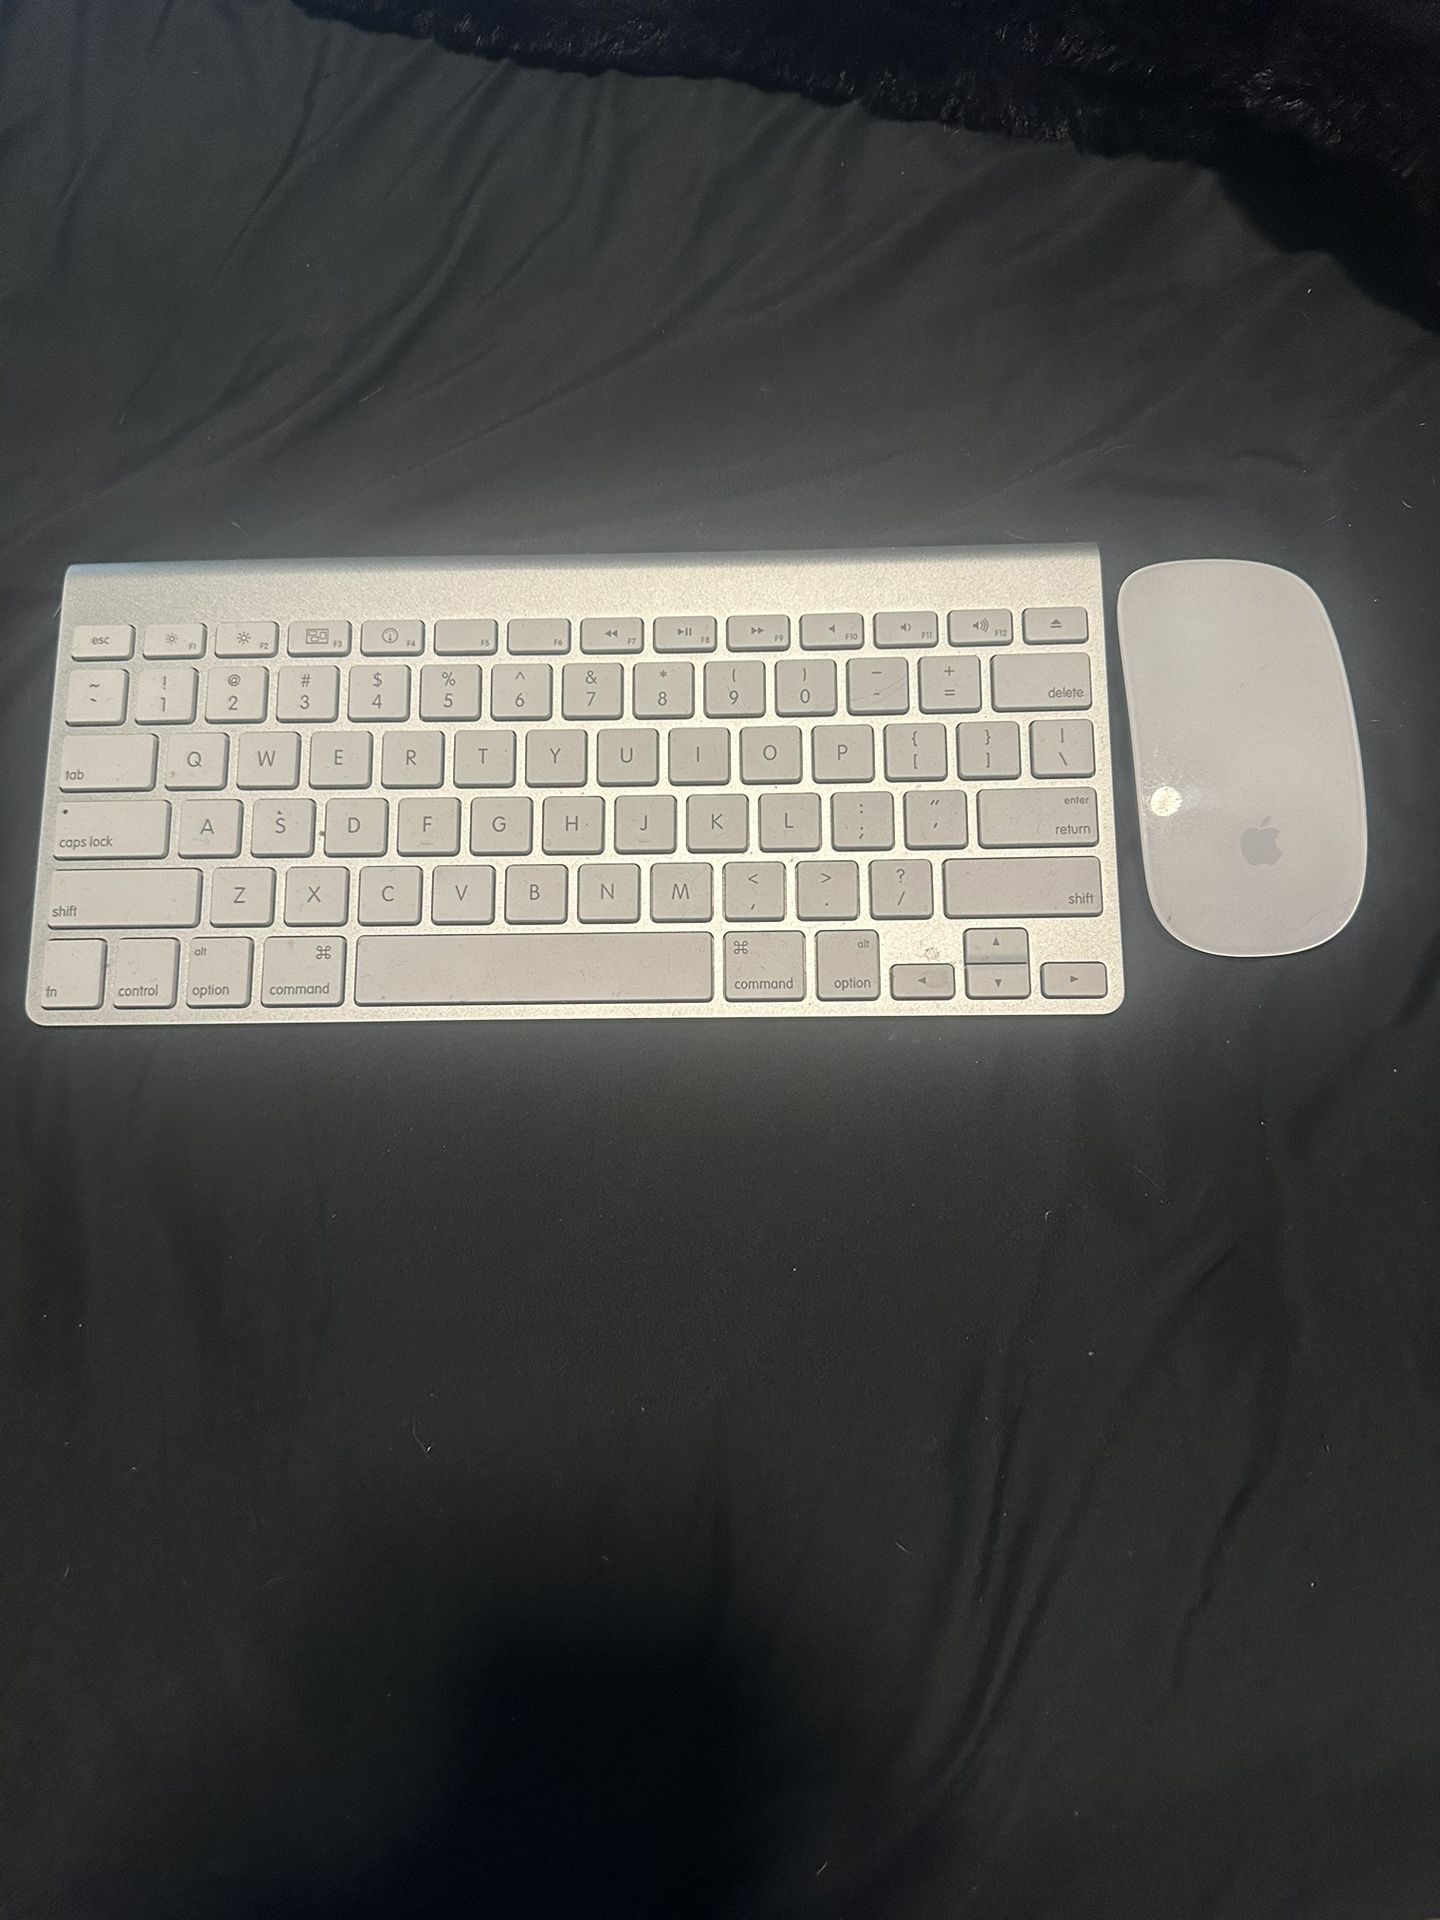 Apple Wireless Keyboard & Mouse